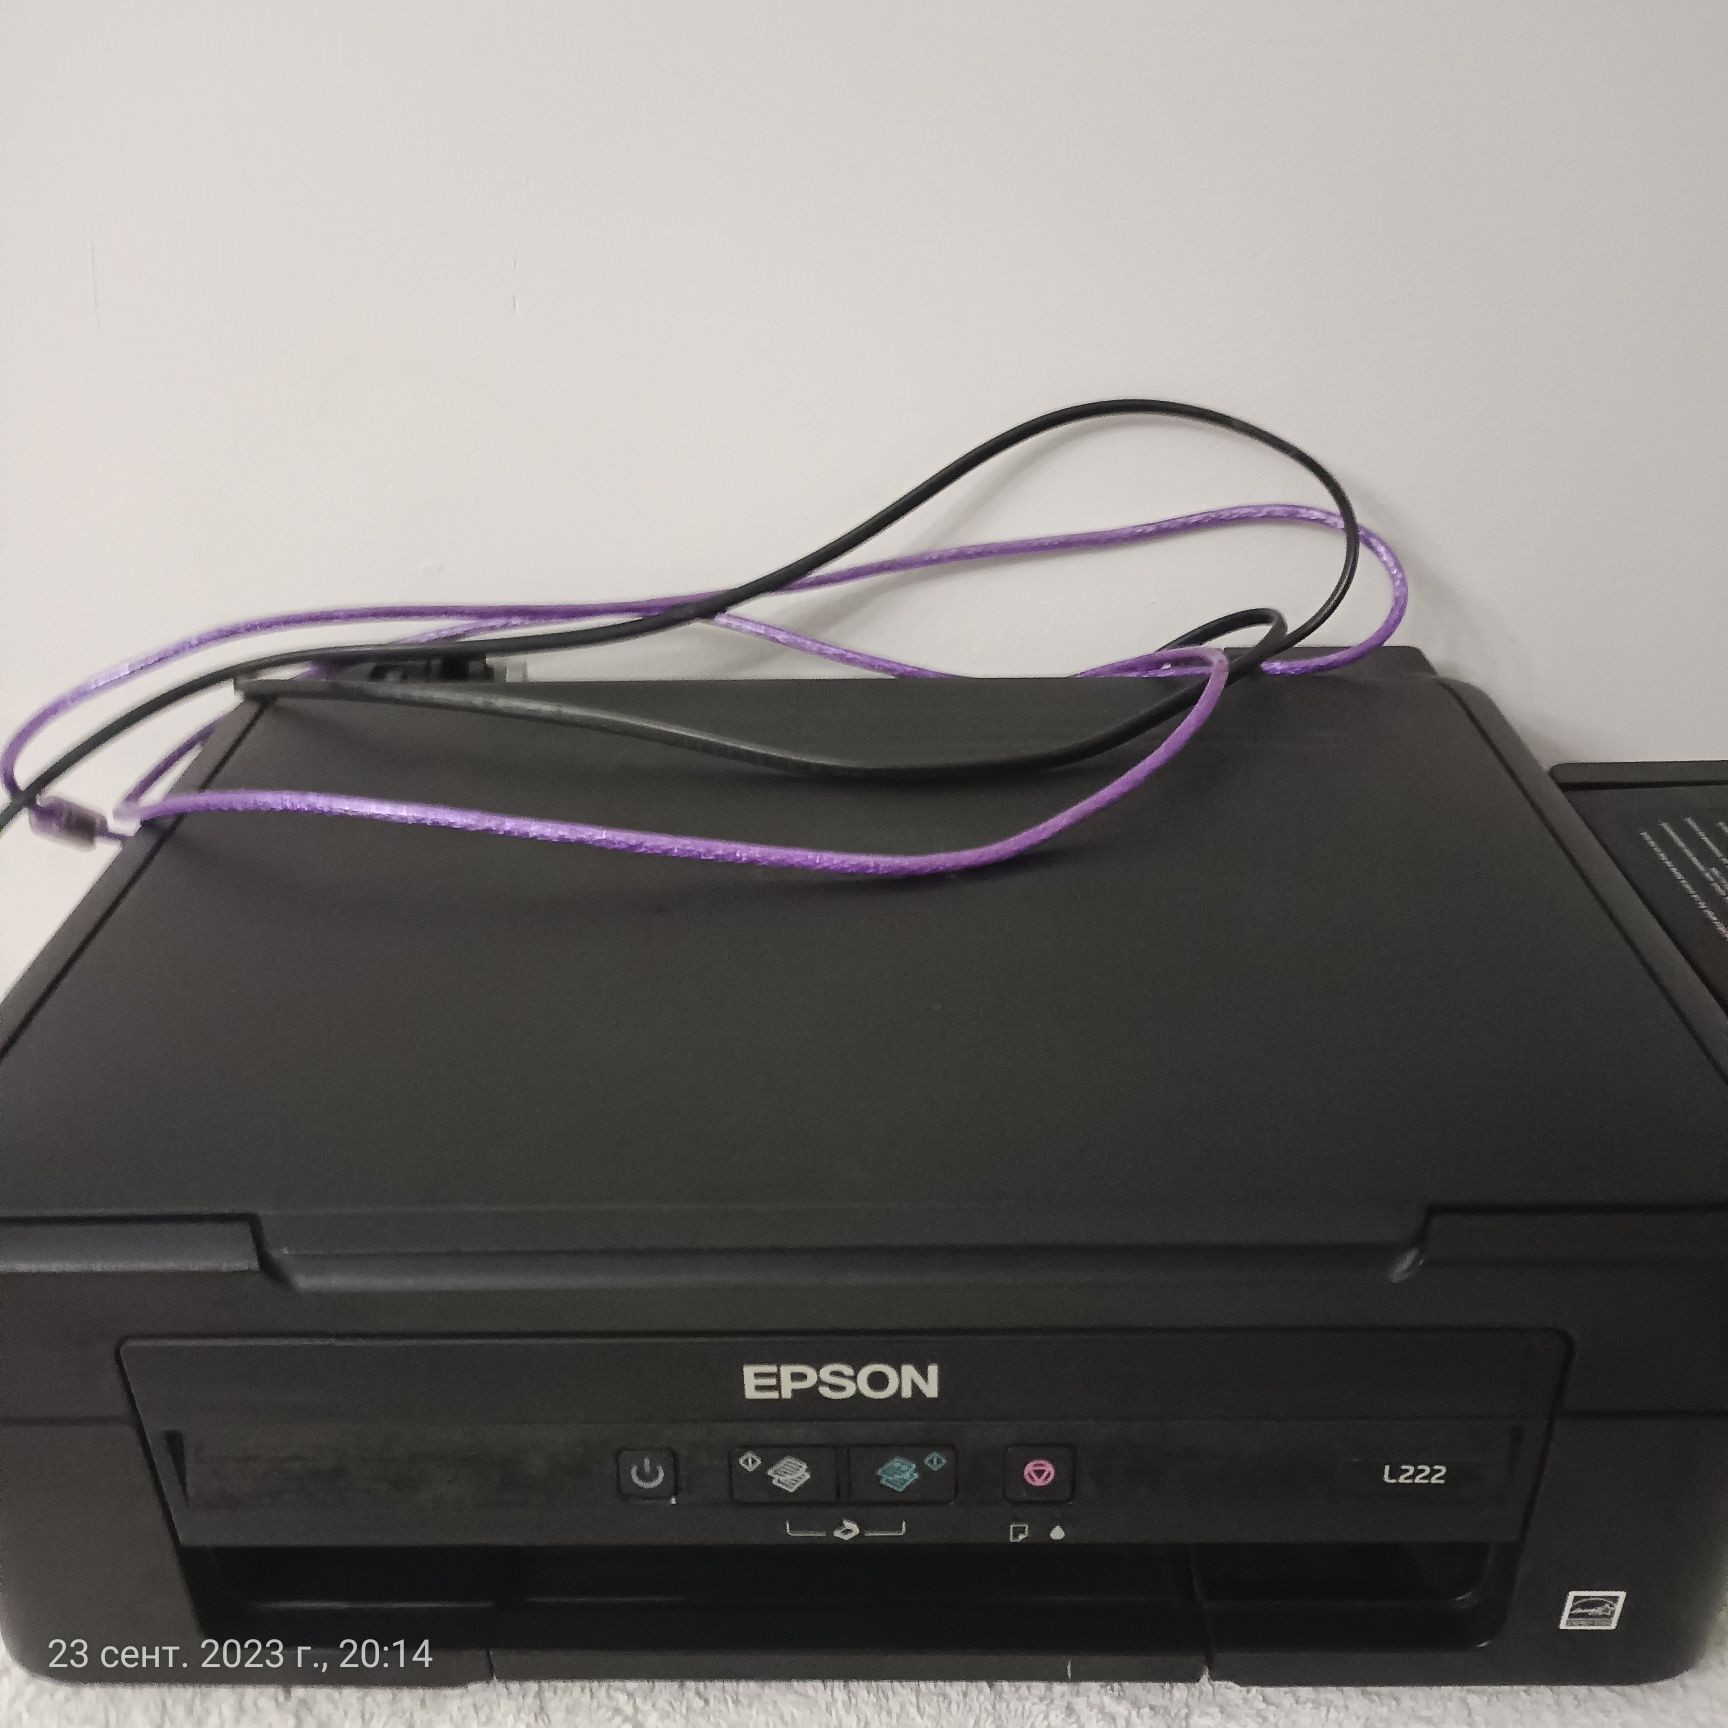 Продам принтер почти новая Epson l22. Цветная черно-белая.